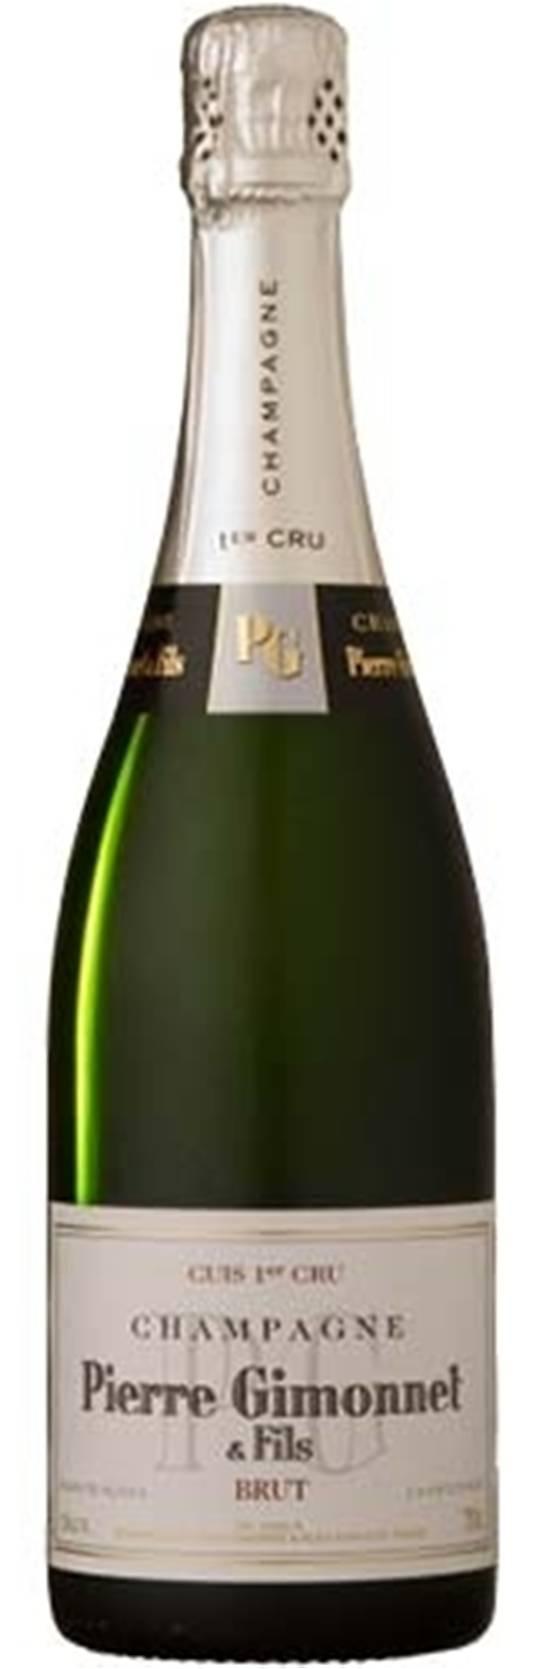 CHAMPAGNE BLANC DE BLANCS CUIS 1er CRU Chardonnay 100% Cuis 1er Cru Le uve vengono raccolte manualmente e pressate.